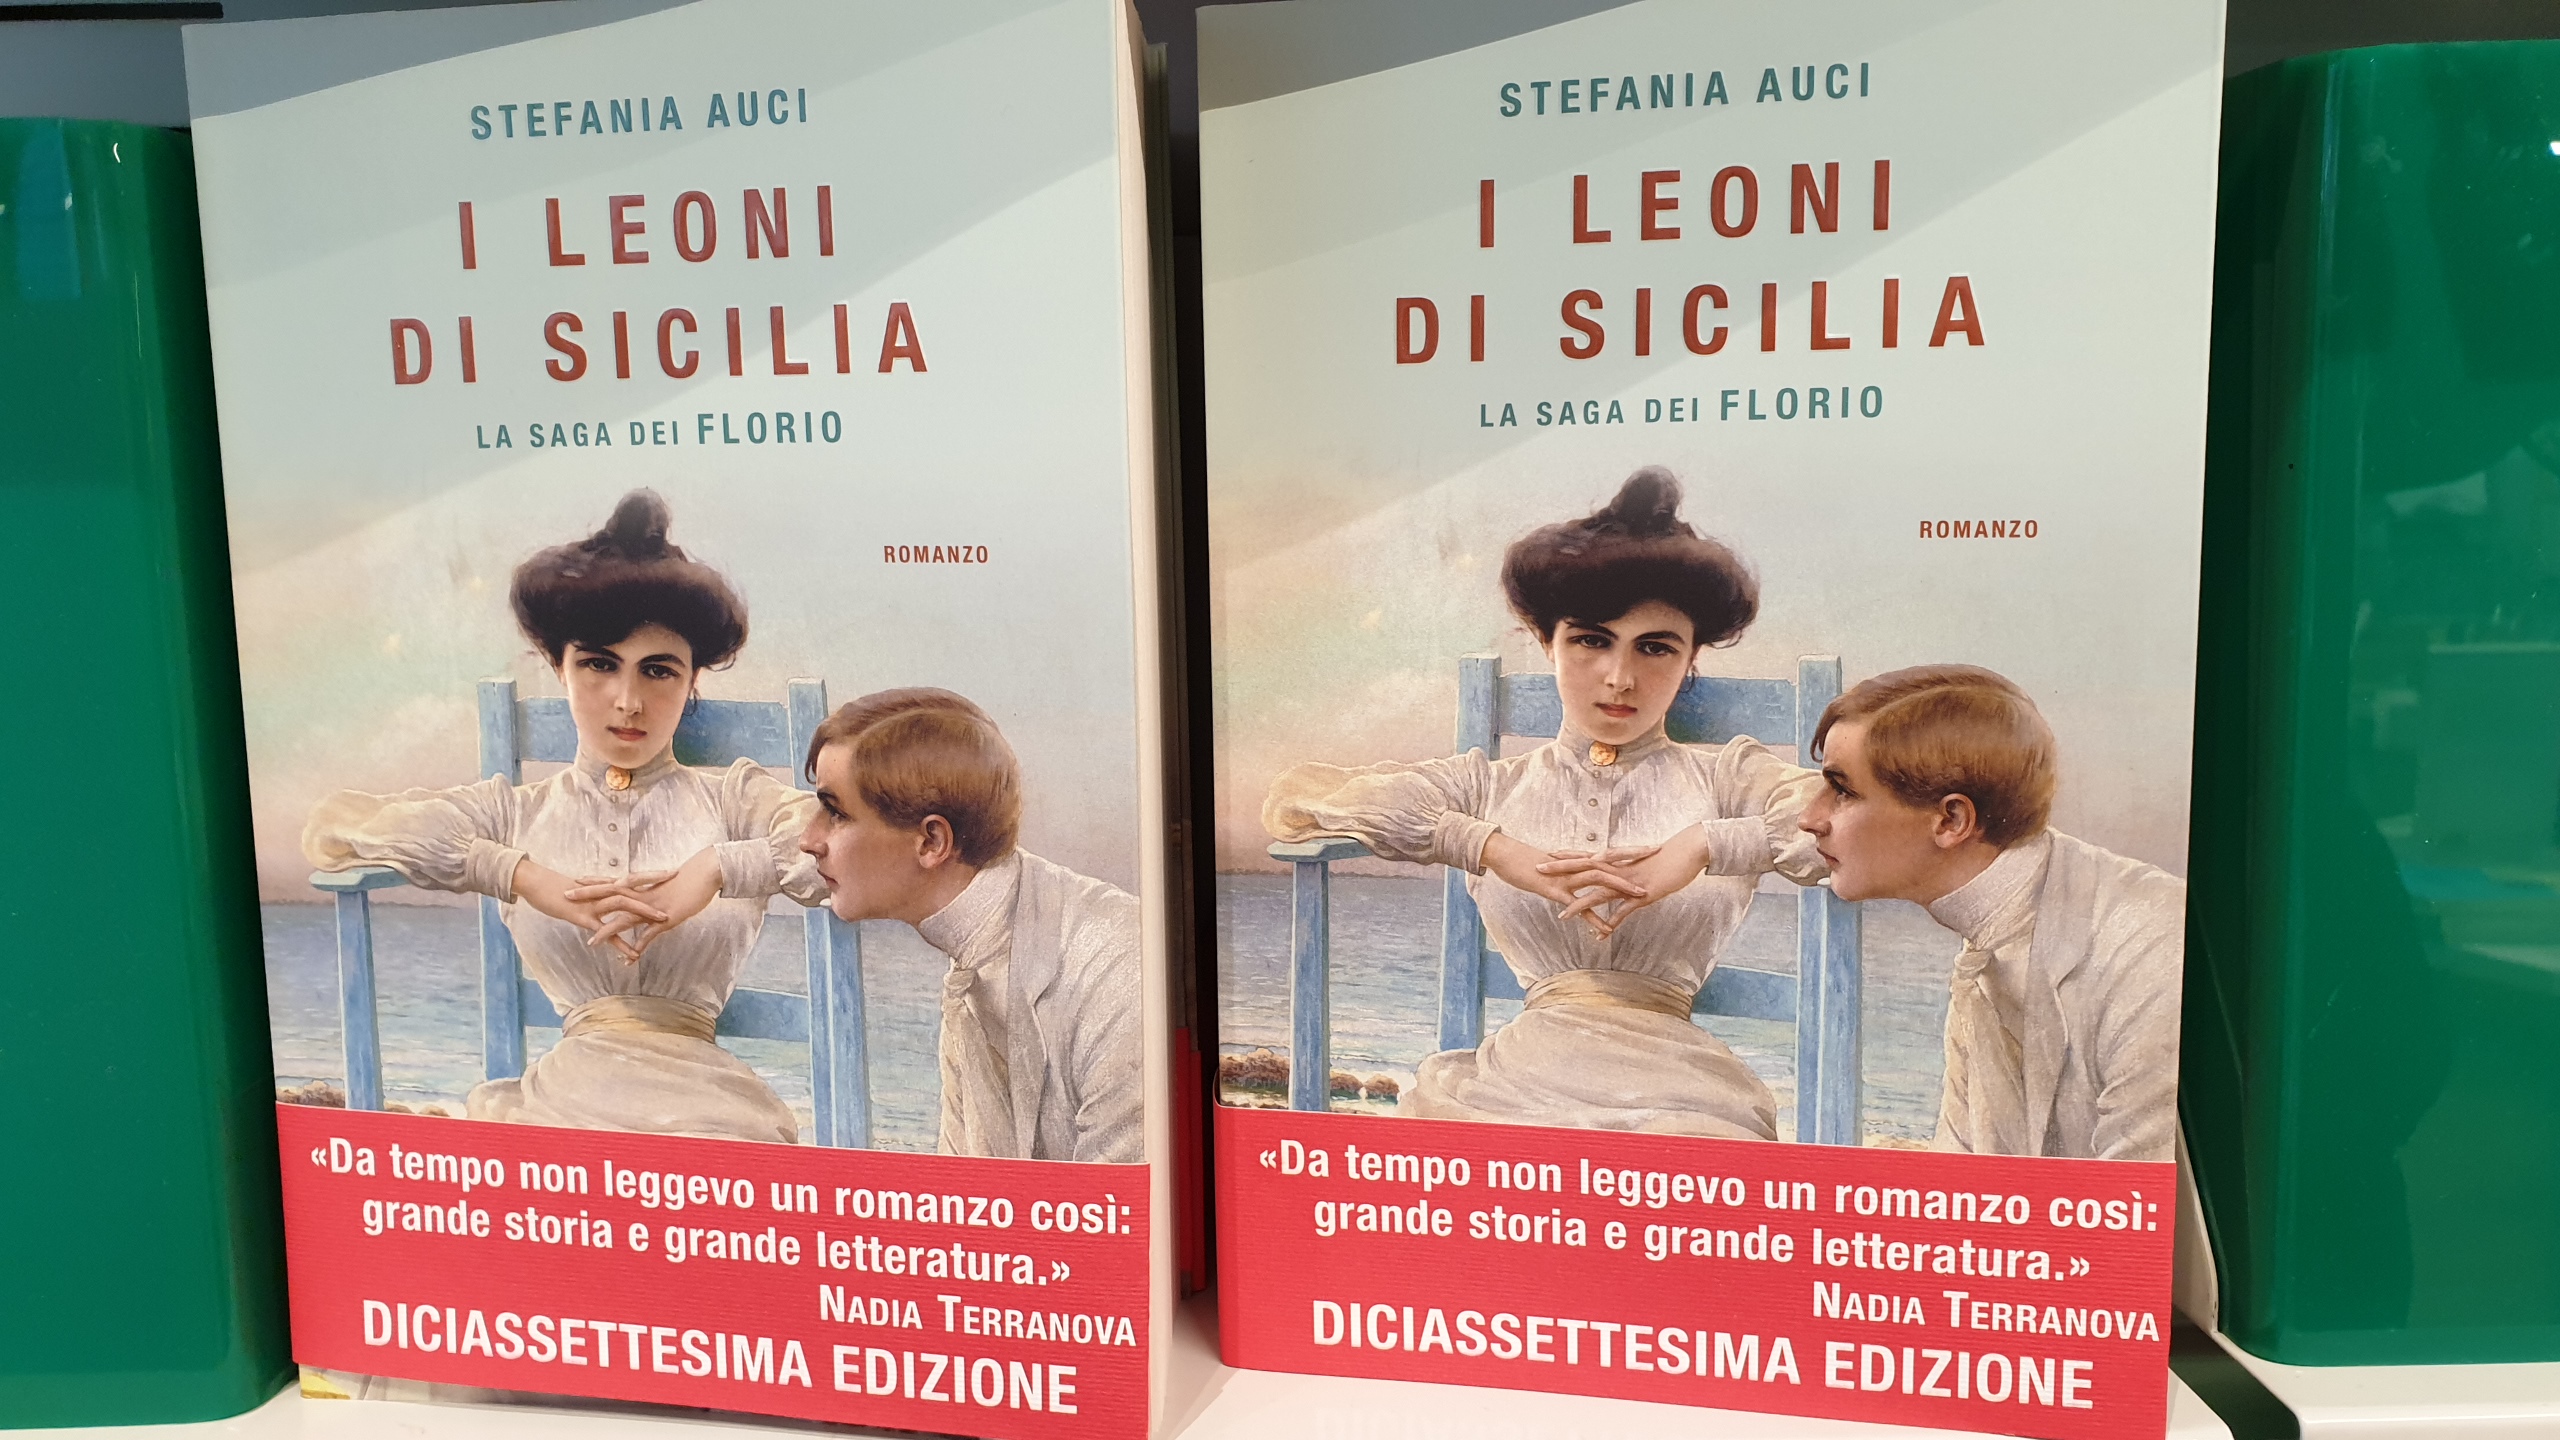 Bilancio libri 2019: I Leoni di Sicilia il più venduto. Bene anche  Carofiglio - Libertà Piacenza